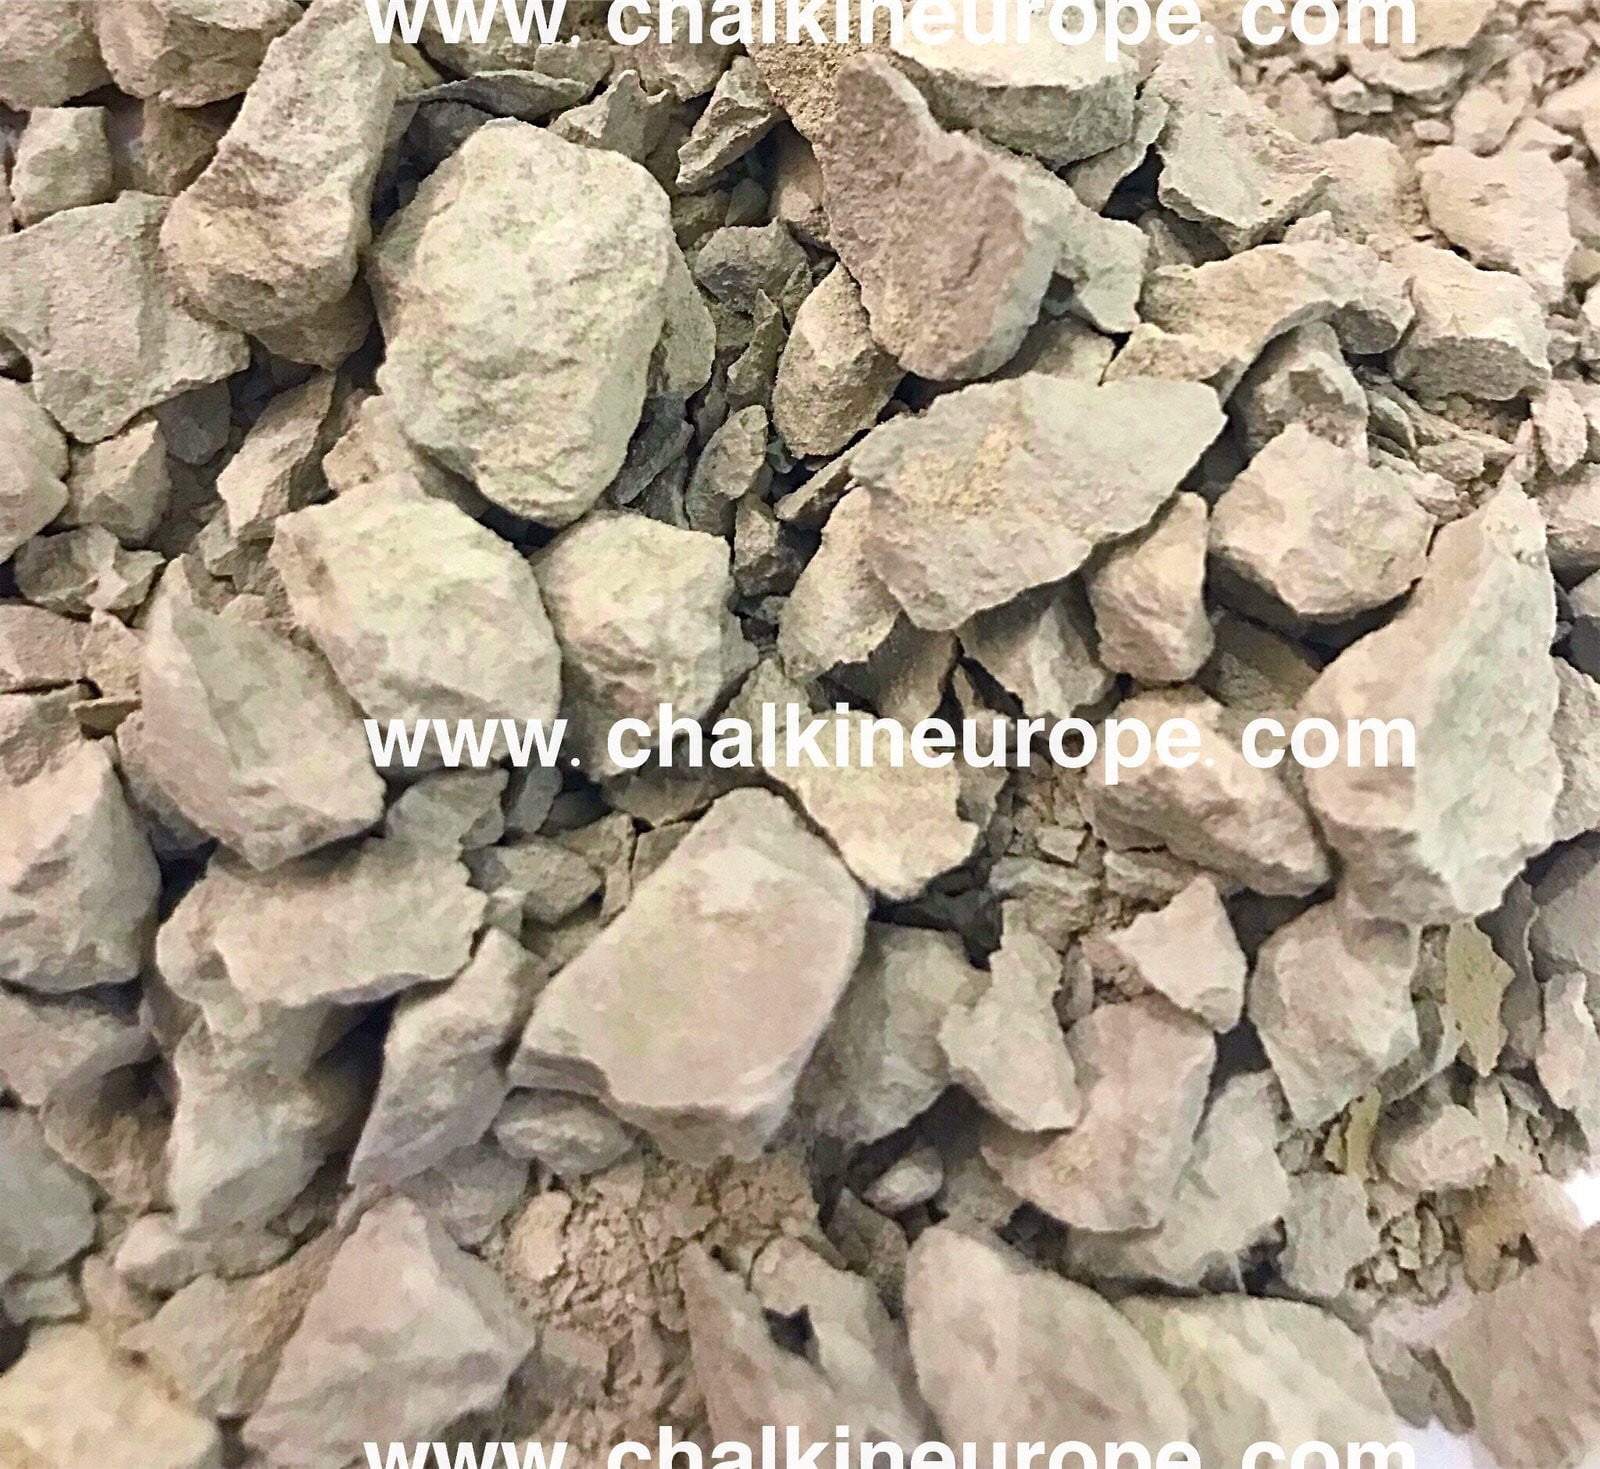 Sudraba putekļu māla kodumi - Chalkineurope